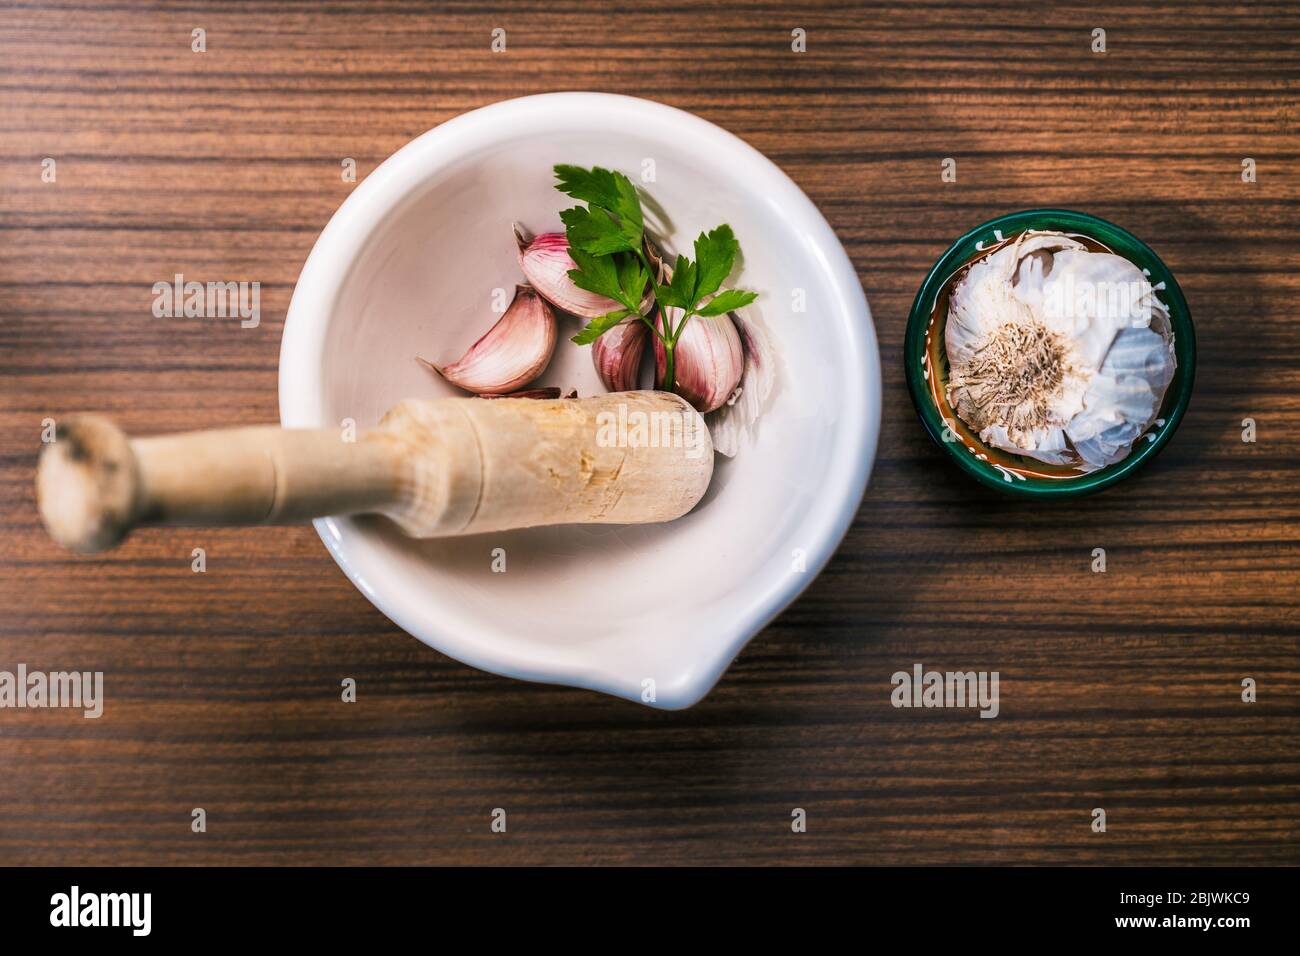 Préparer une recette pour faire des aioli de manière traditionnelle et maison. Ingrédients et ustensiles pour préparer l'huile d'ail. Gousses d'ail différentes, persil l Banque D'Images